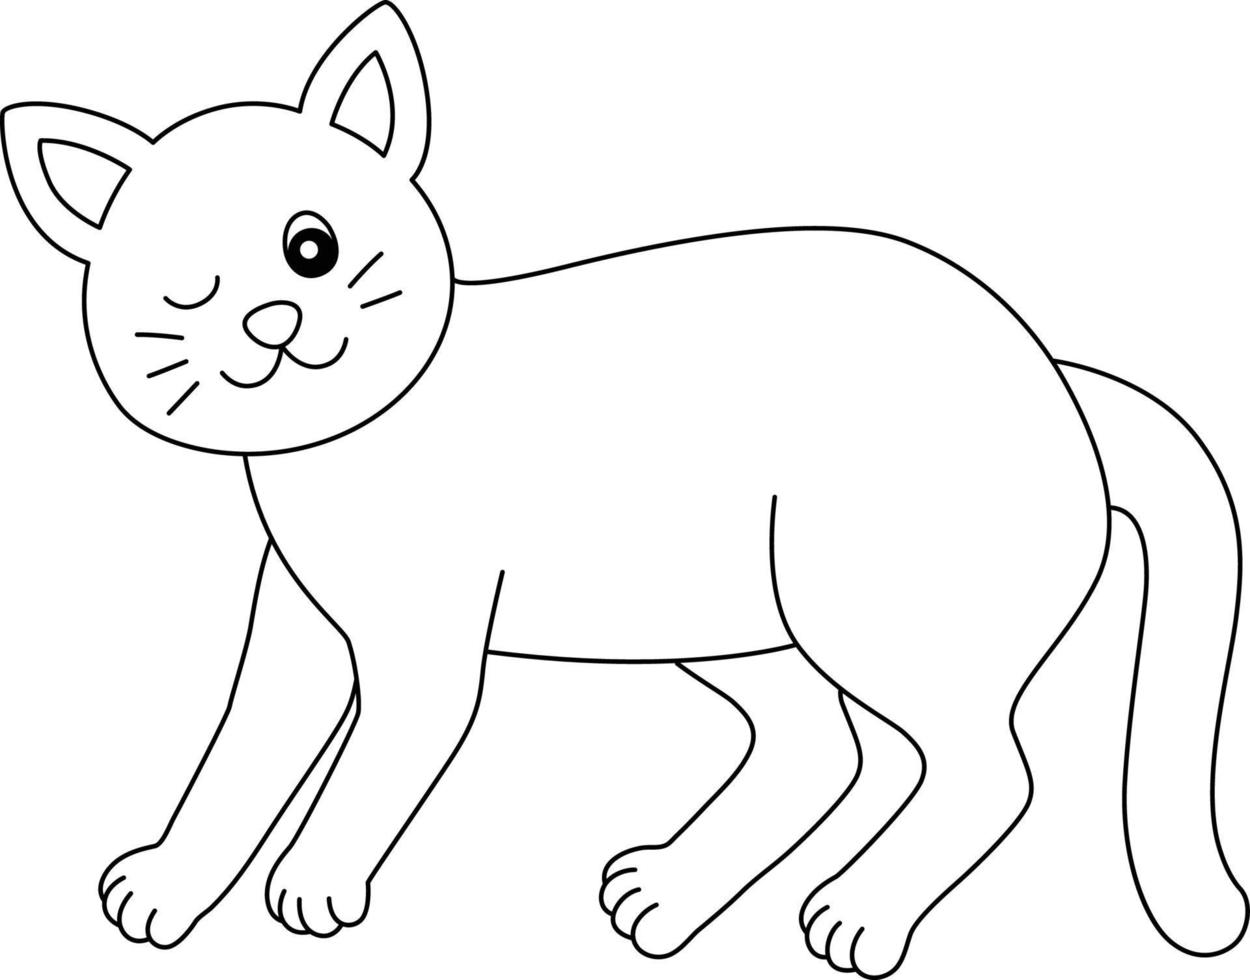 katt målarbok isolerad för barn vektor